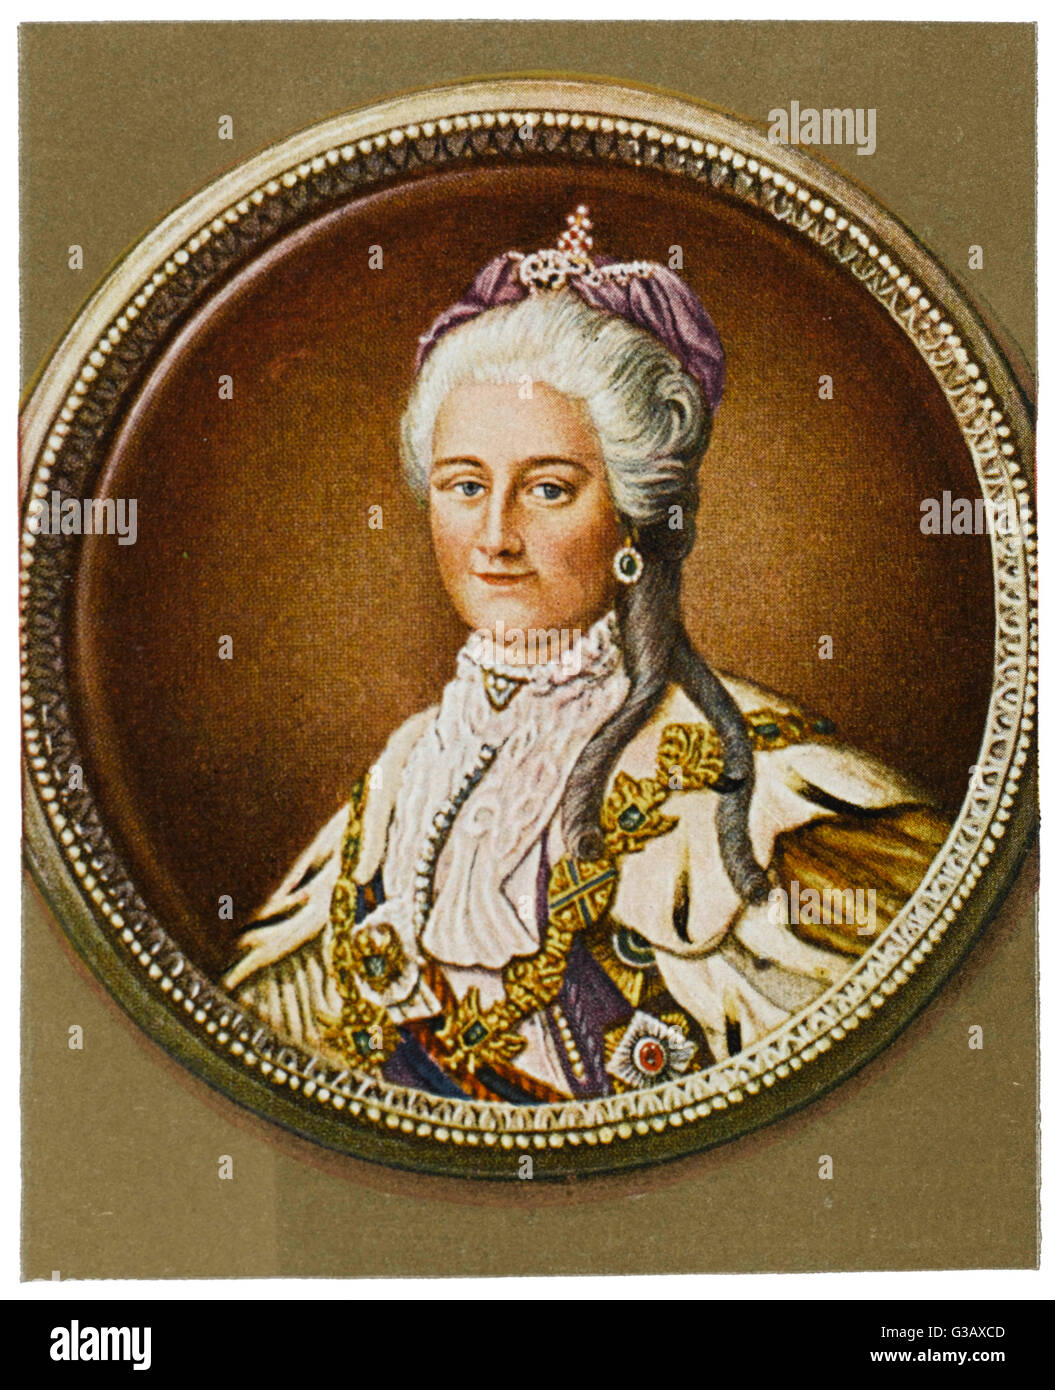 Caterina la Grande imperatrice di Russia (1762-96) Data: 1729 - 1796 Foto Stock